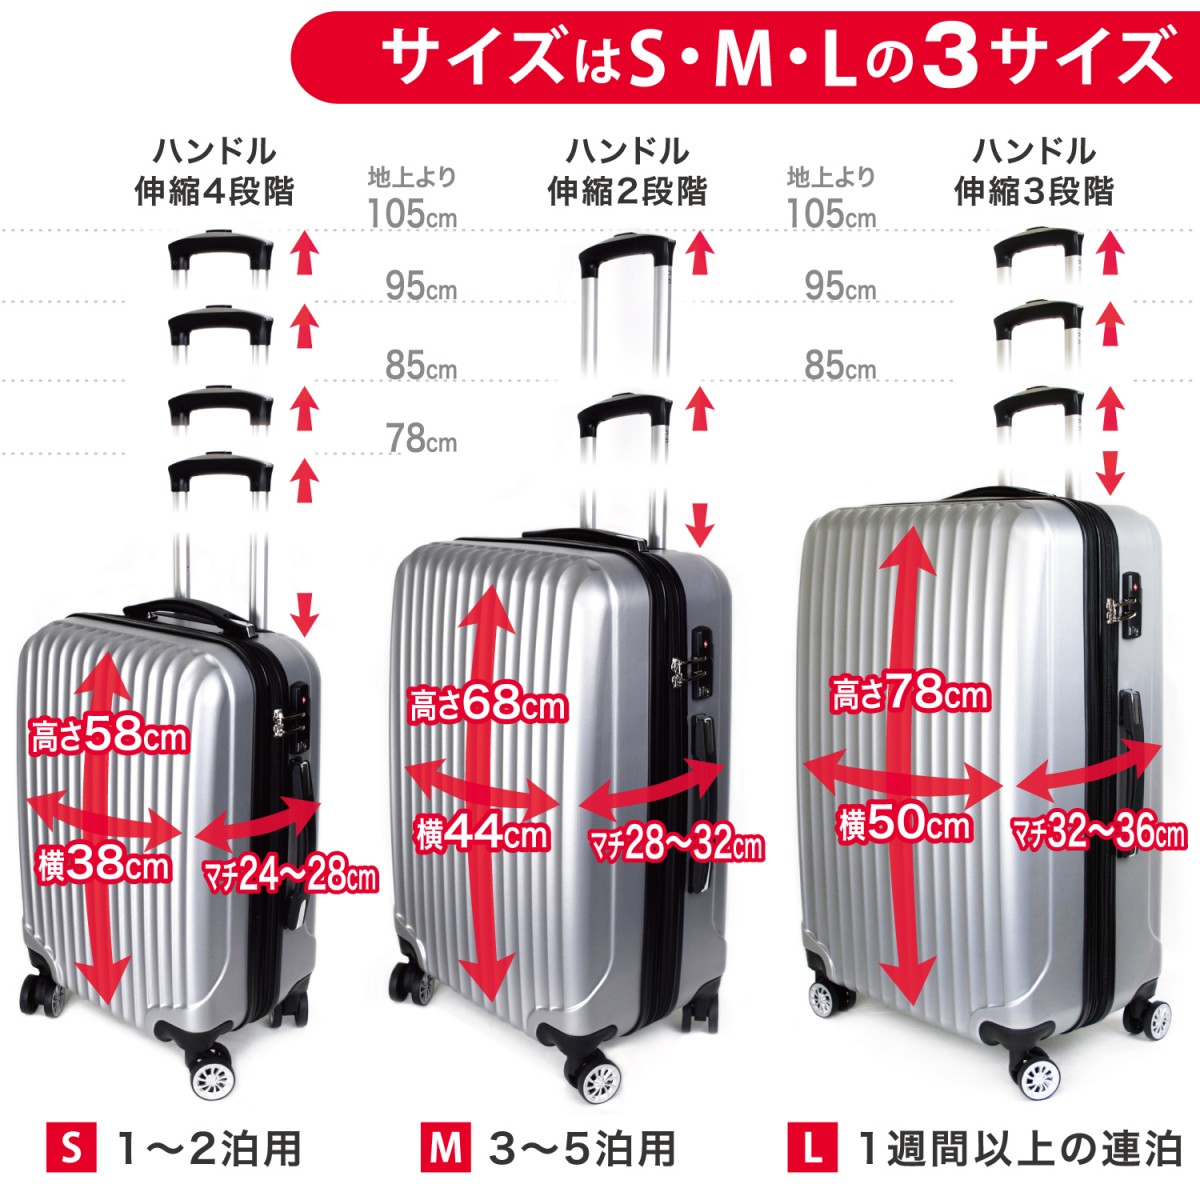 軽量スーツケース キャリーバッグ 8輪キャスター TSAロック付き 「Mサイズ」 LB001 | 神戸元町リベラル レディースバッグ・ビジネス